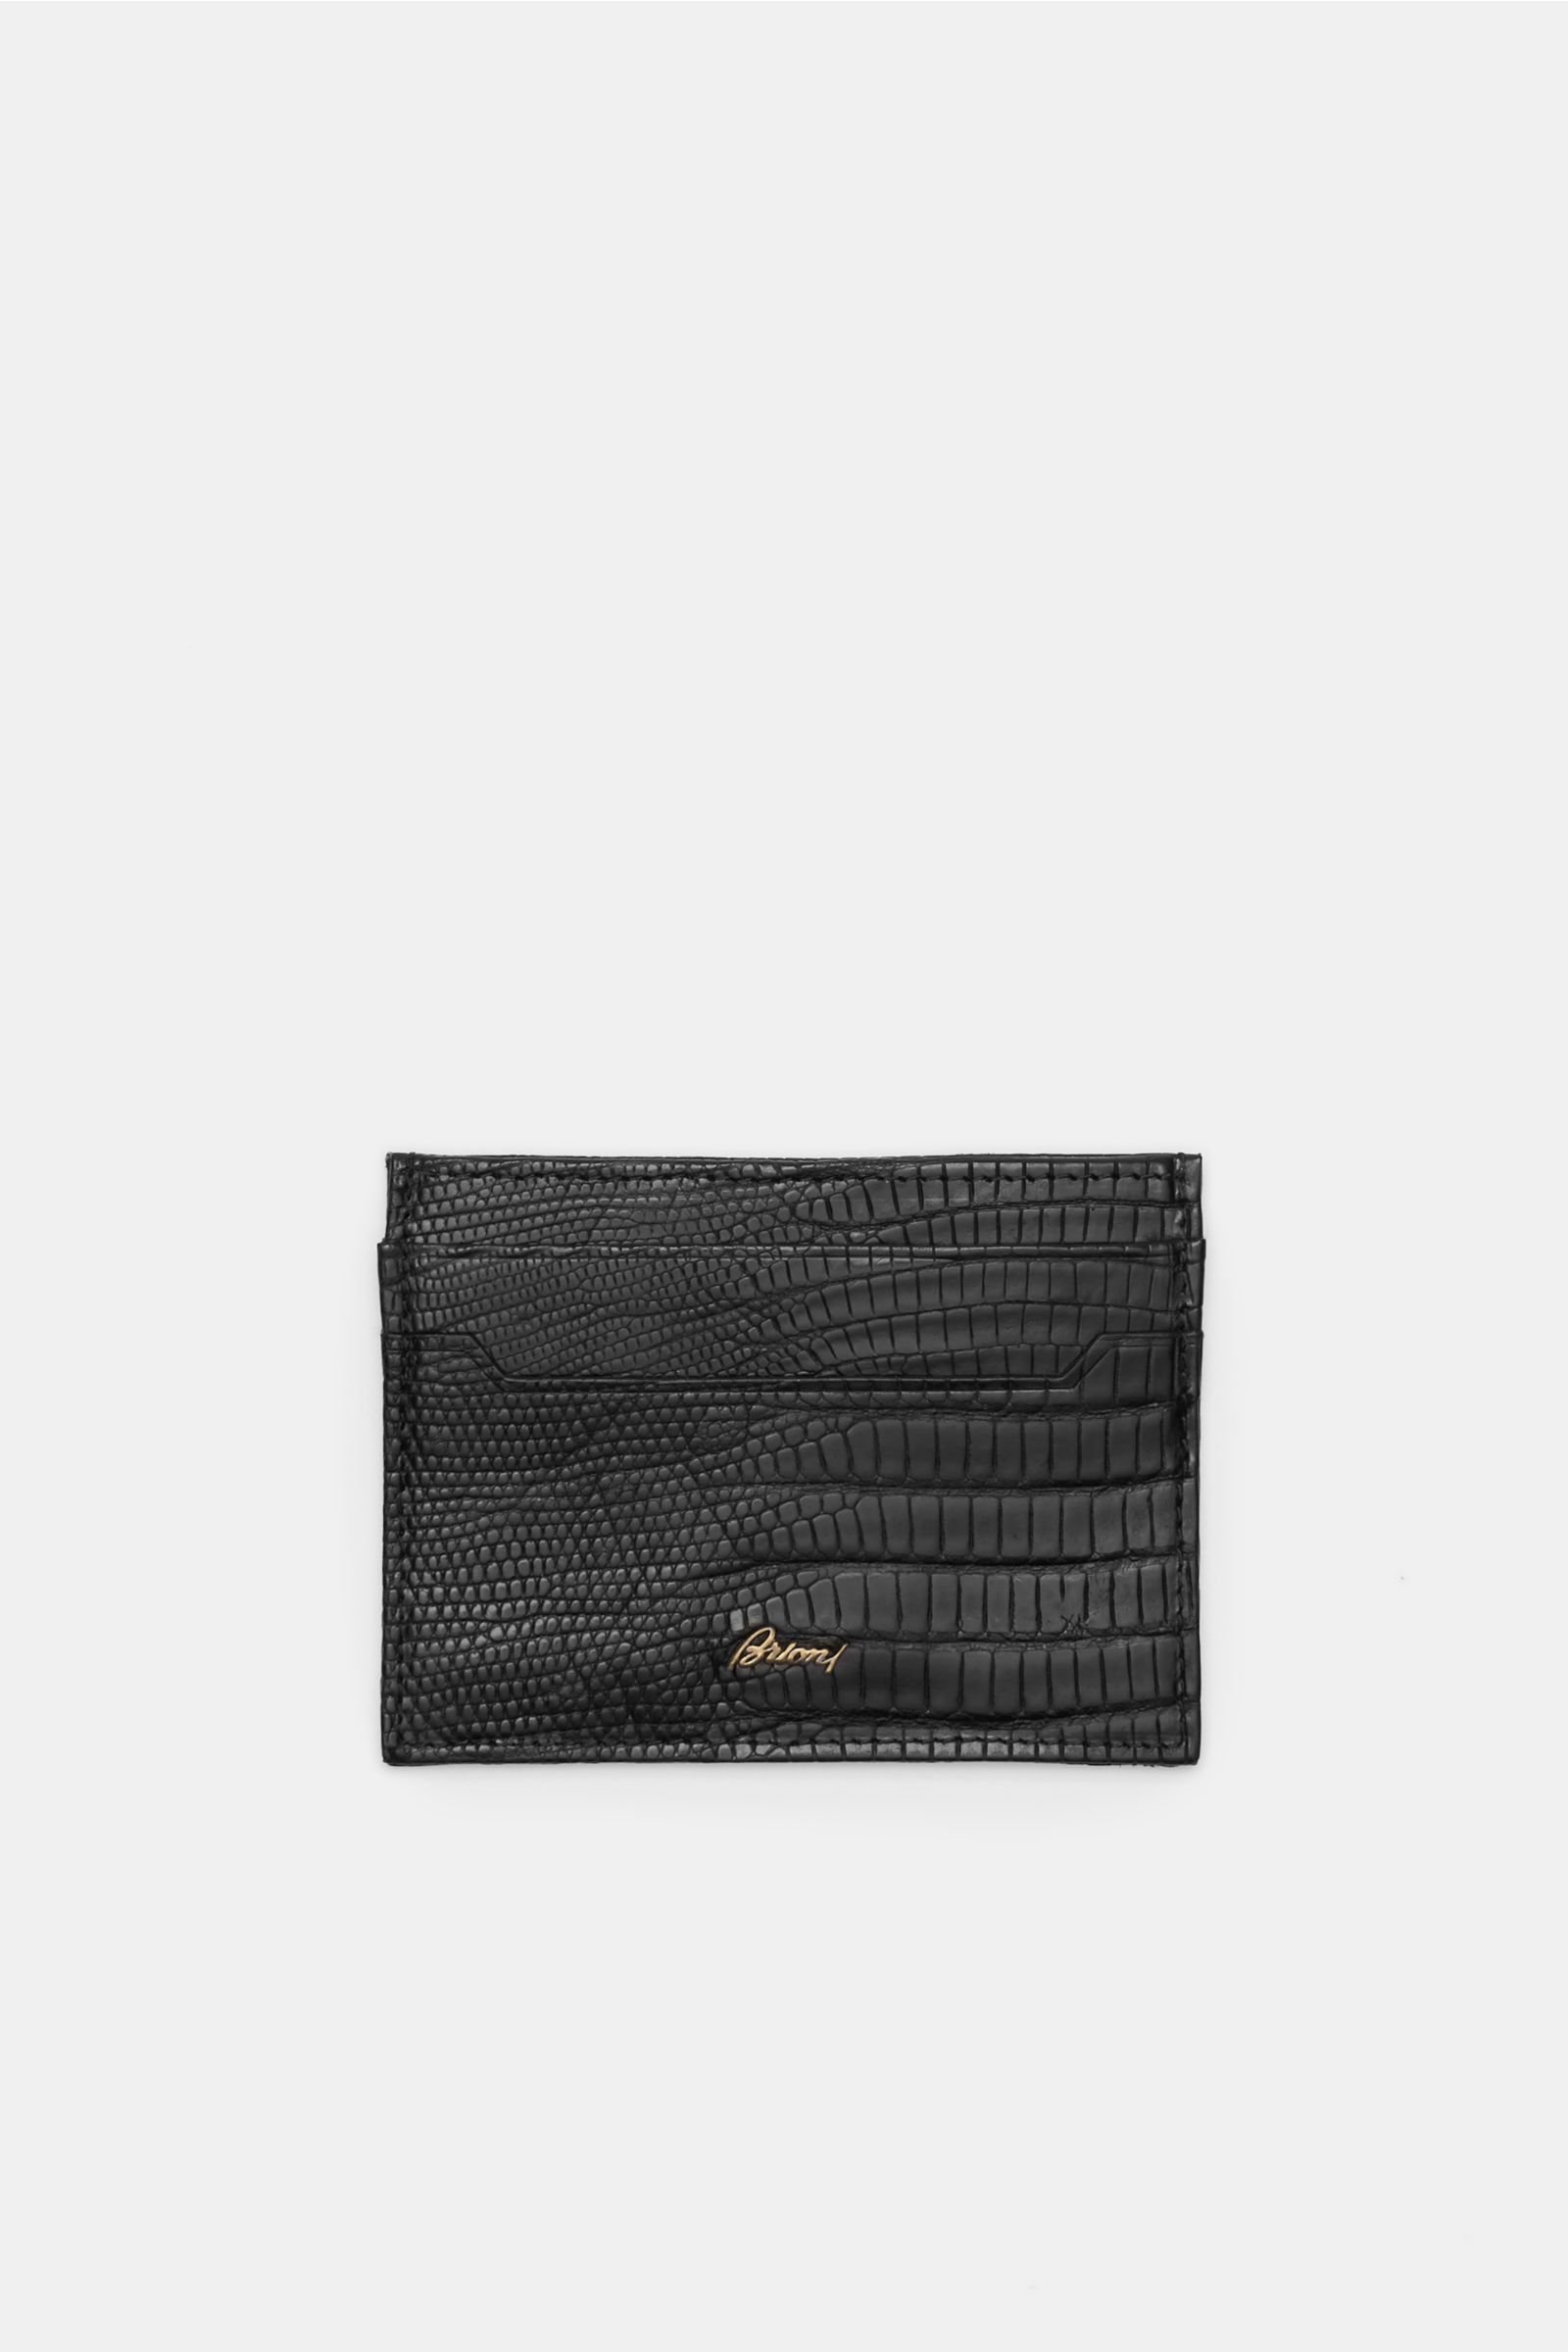 Snakeskin credit card holder black